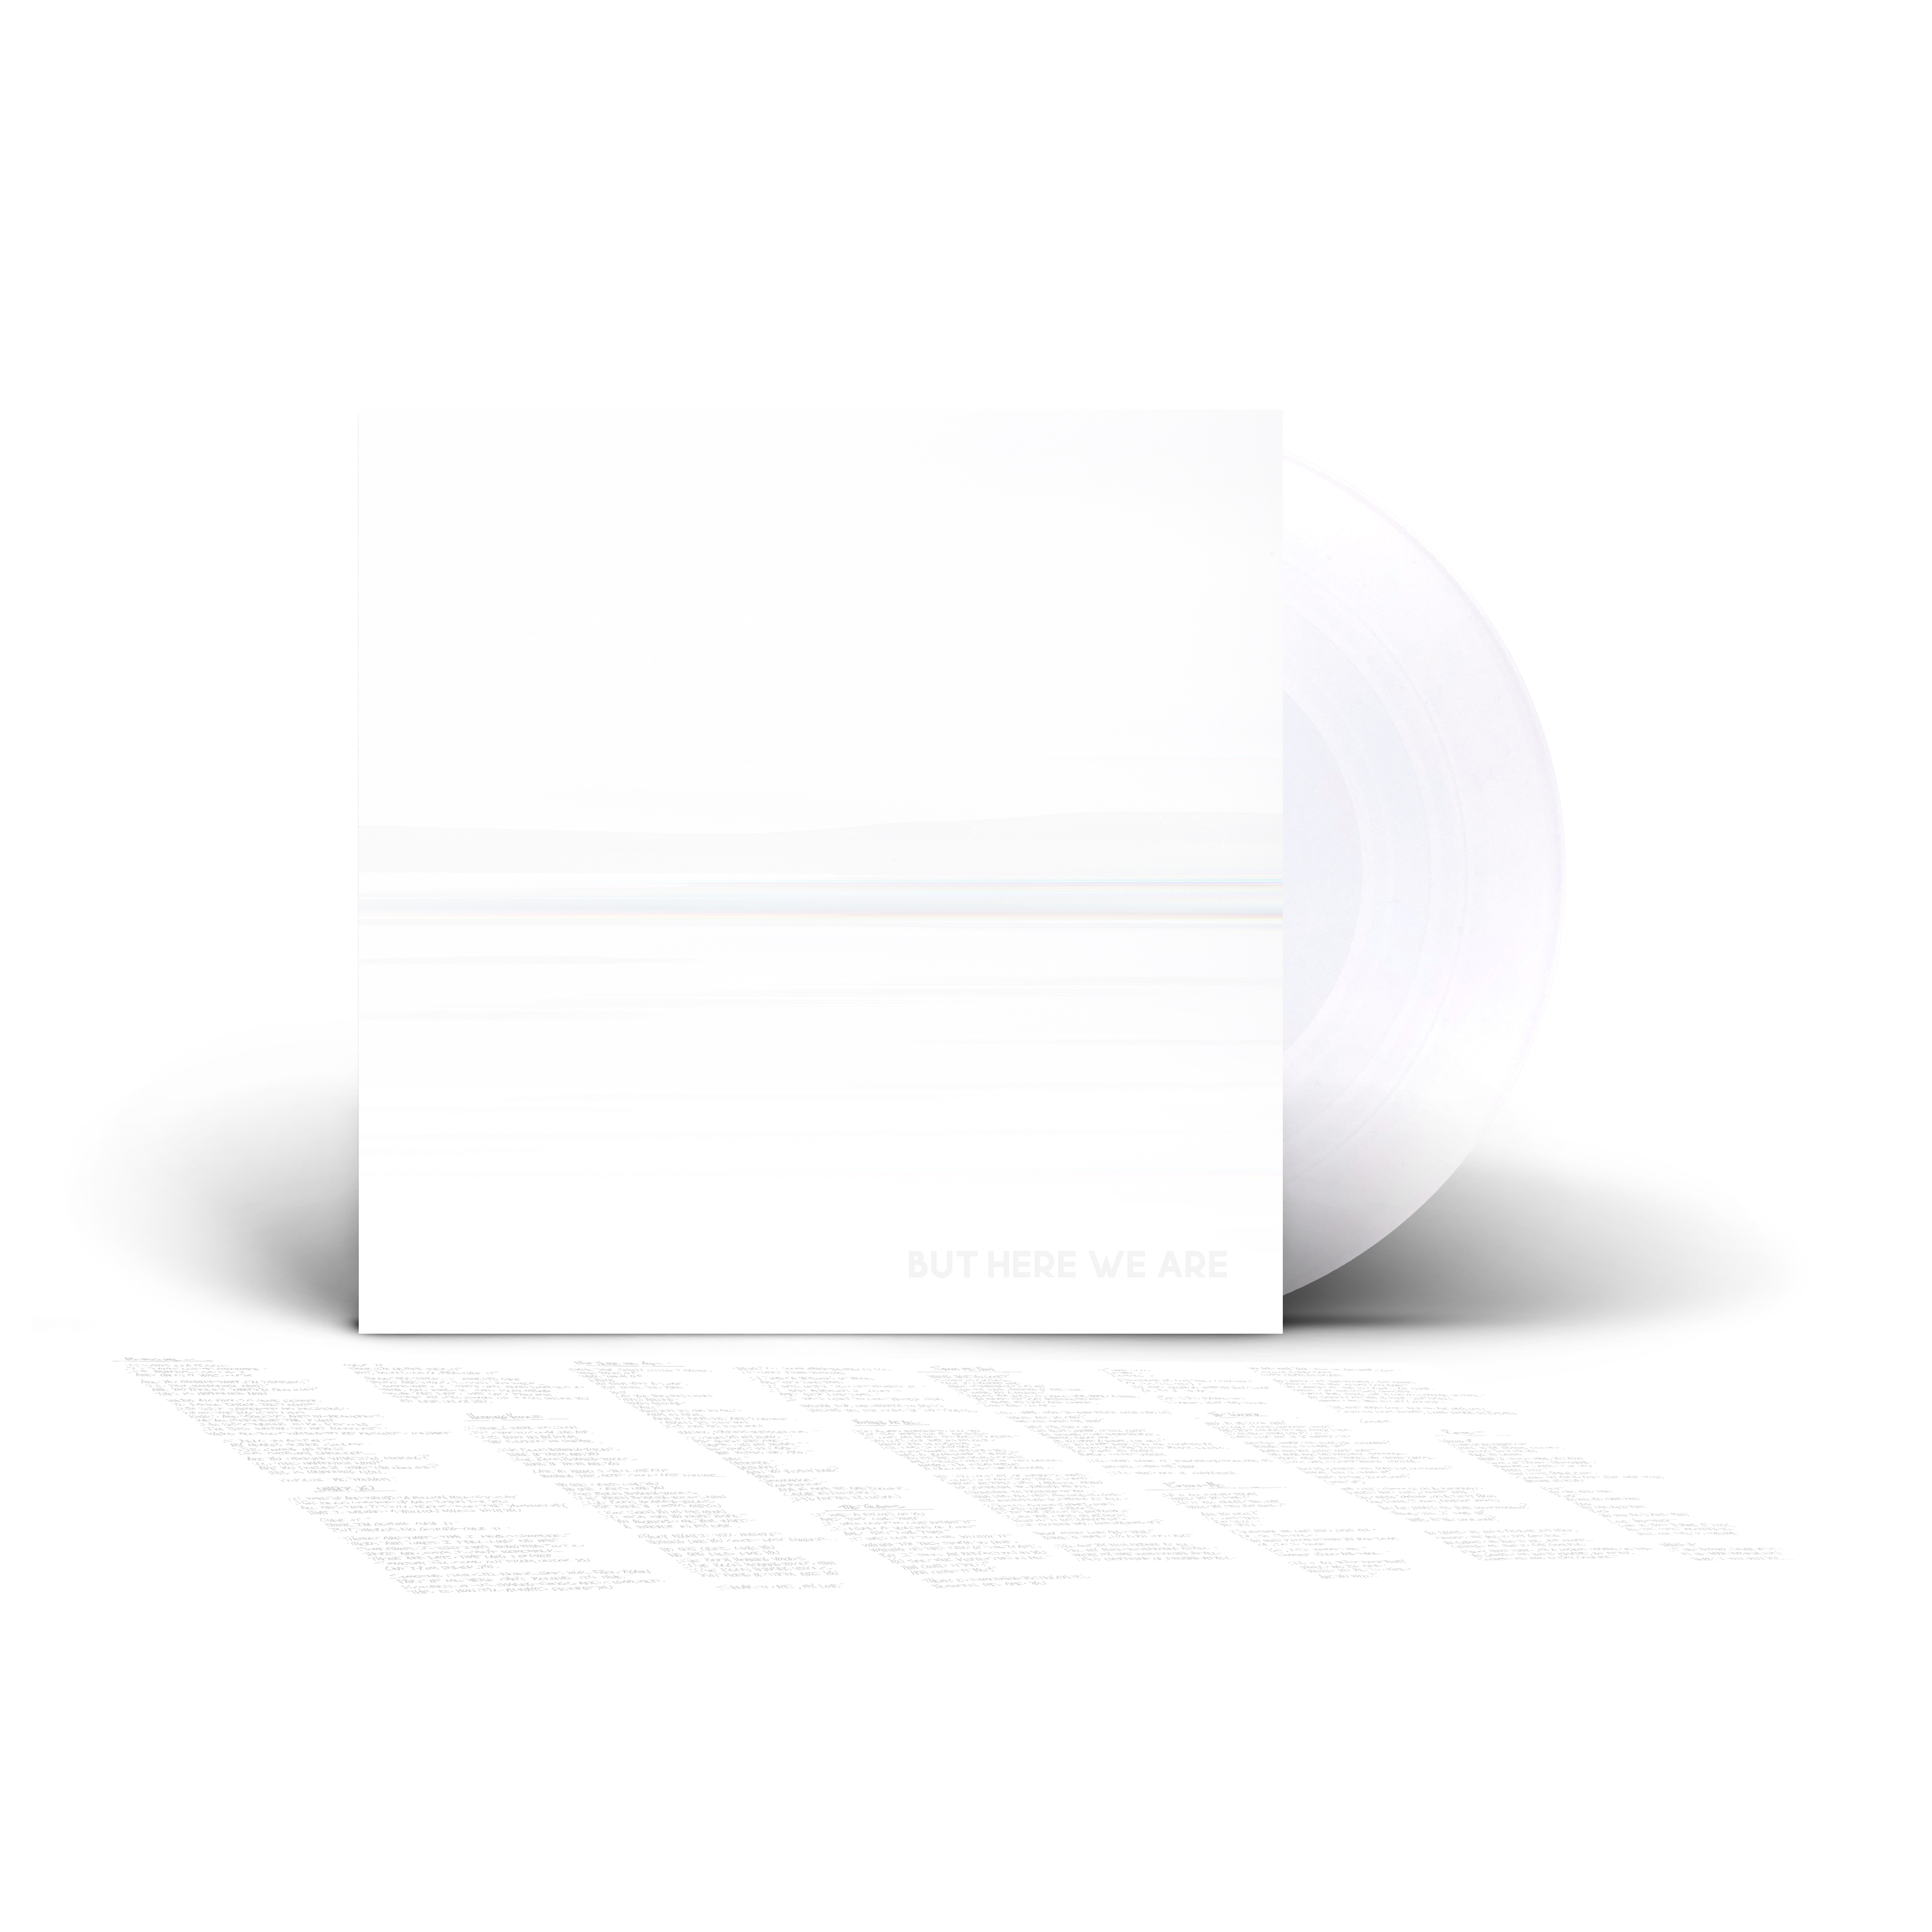 Foo Fighters - But Here We Are - White Vinyl Soft-Pak + Folded Poster Insert Lt - 第 1/1 張圖片